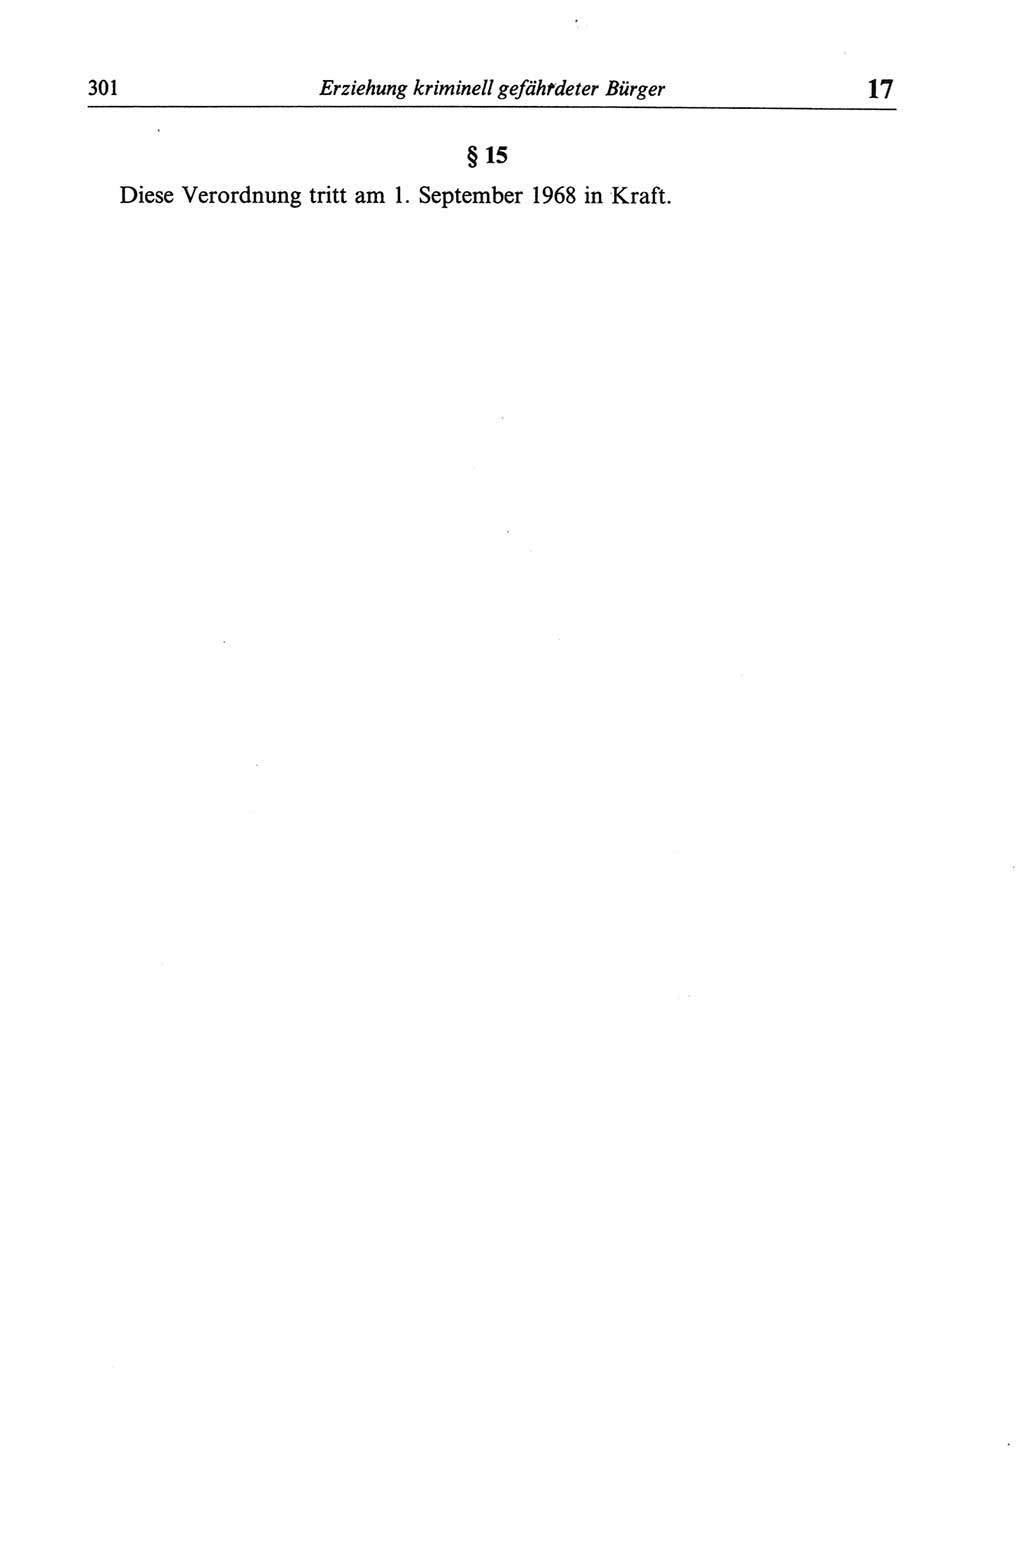 Strafgesetzbuch (StGB) der Deutschen Demokratischen Republik (DDR) und angrenzende Gesetze und Bestimmungen 1968, Seite 301 (StGB Ges. Best. DDR 1968, S. 301)